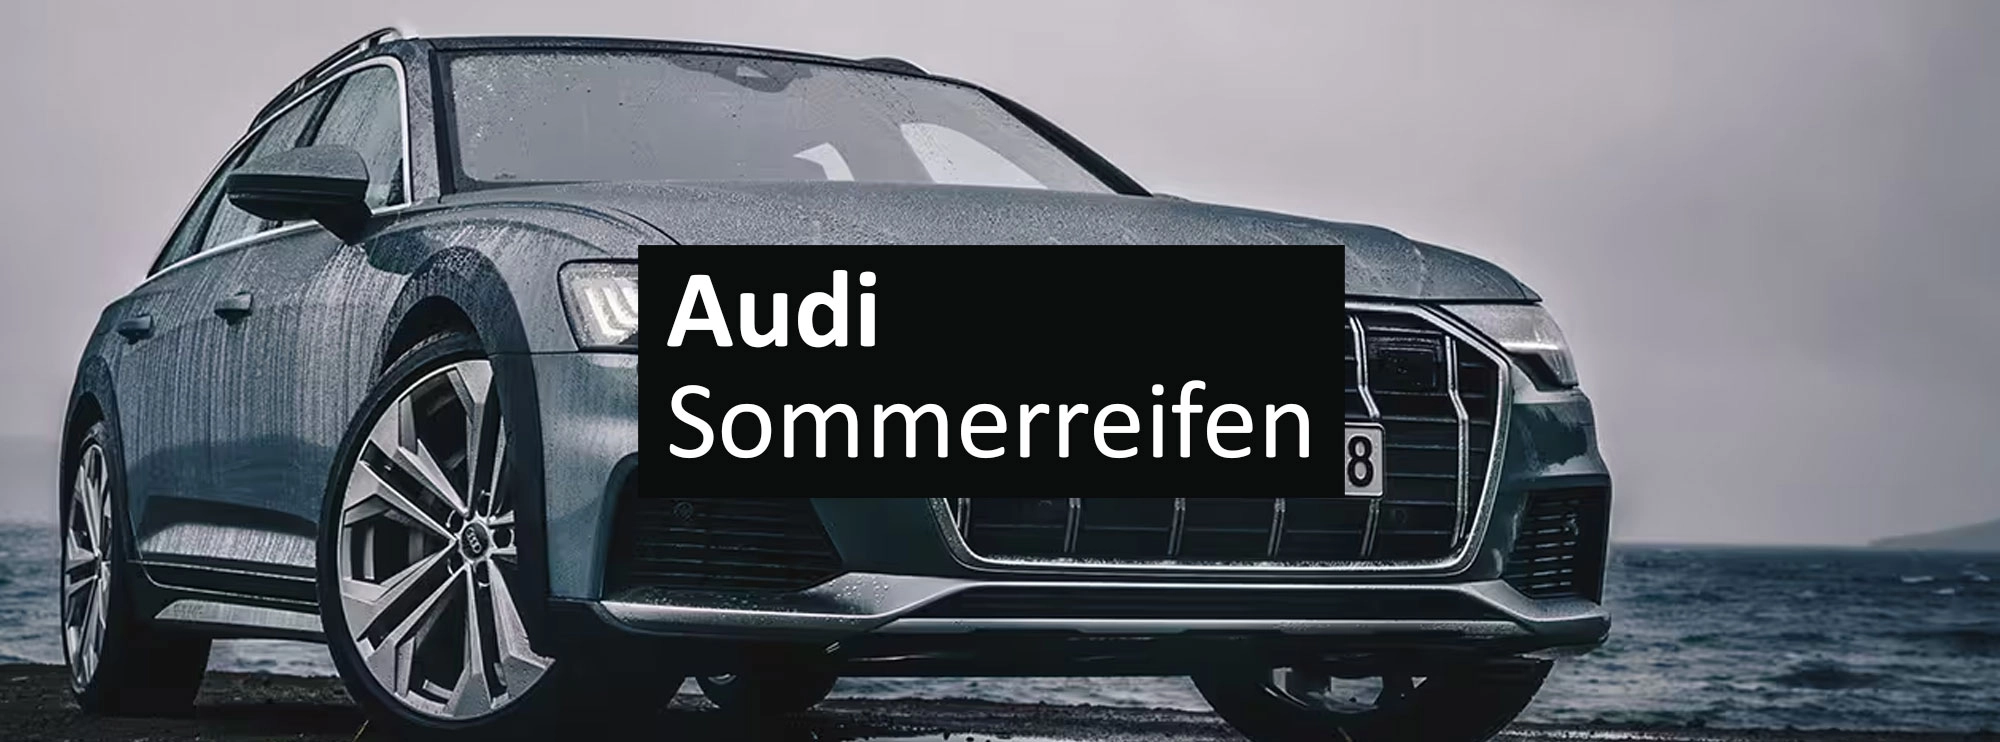 Audi sommerreifen rosier onlineshop header